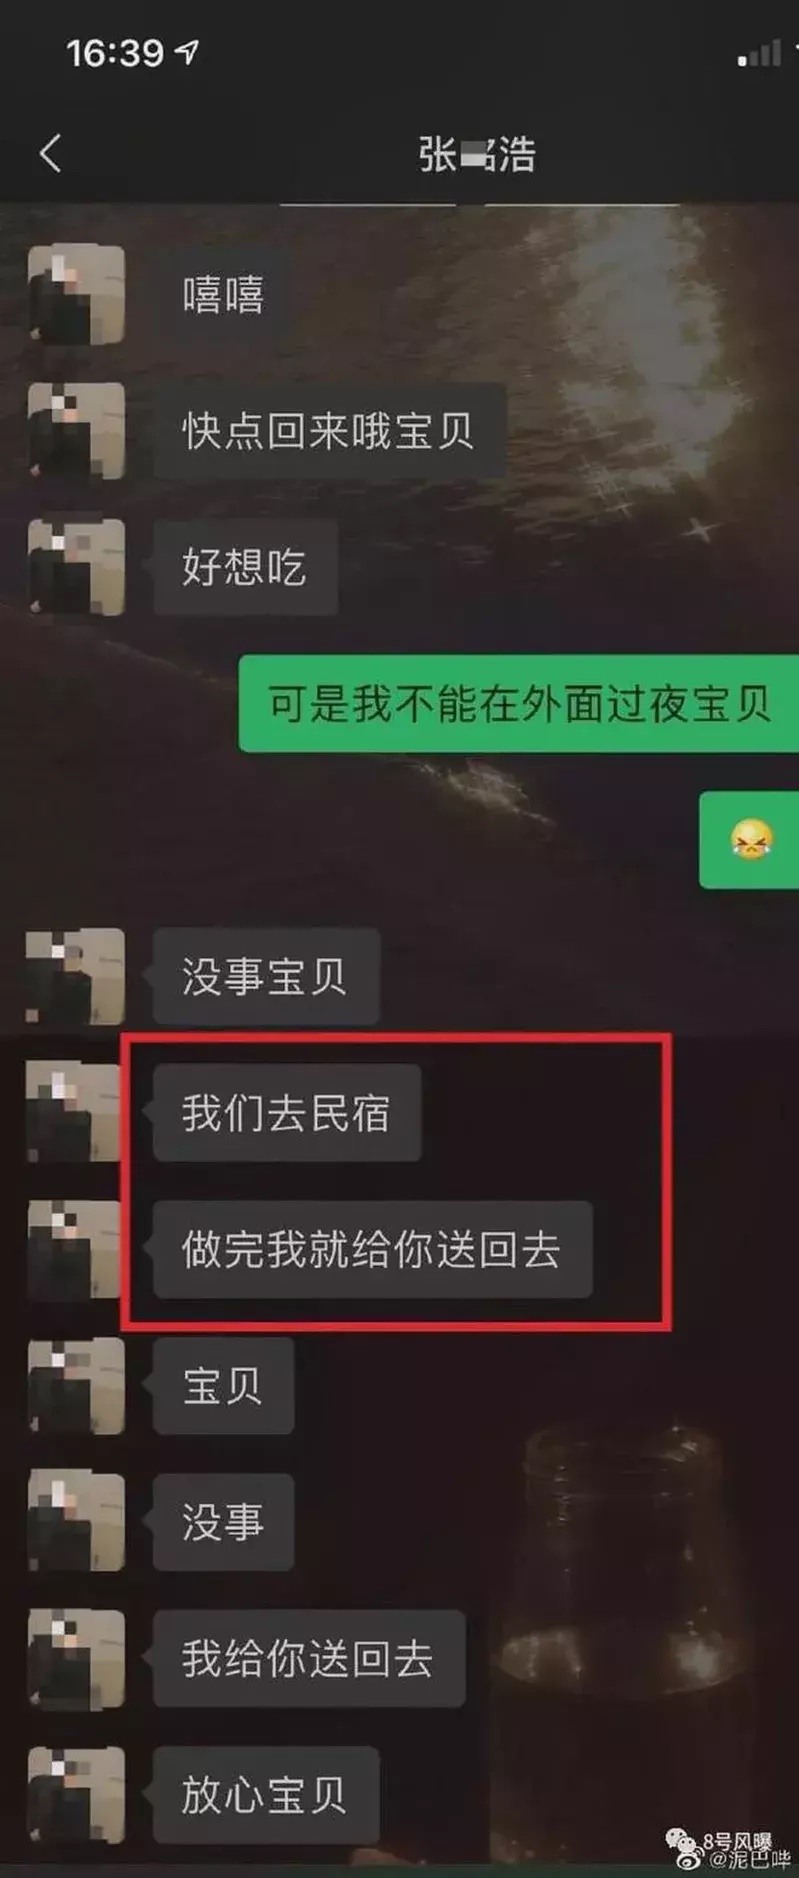 网民爆料A女与张铭浩的聊天纪录，其中张铭浩提出和女生A去民宿，甚至直接说“想要和姐姐睡觉”。